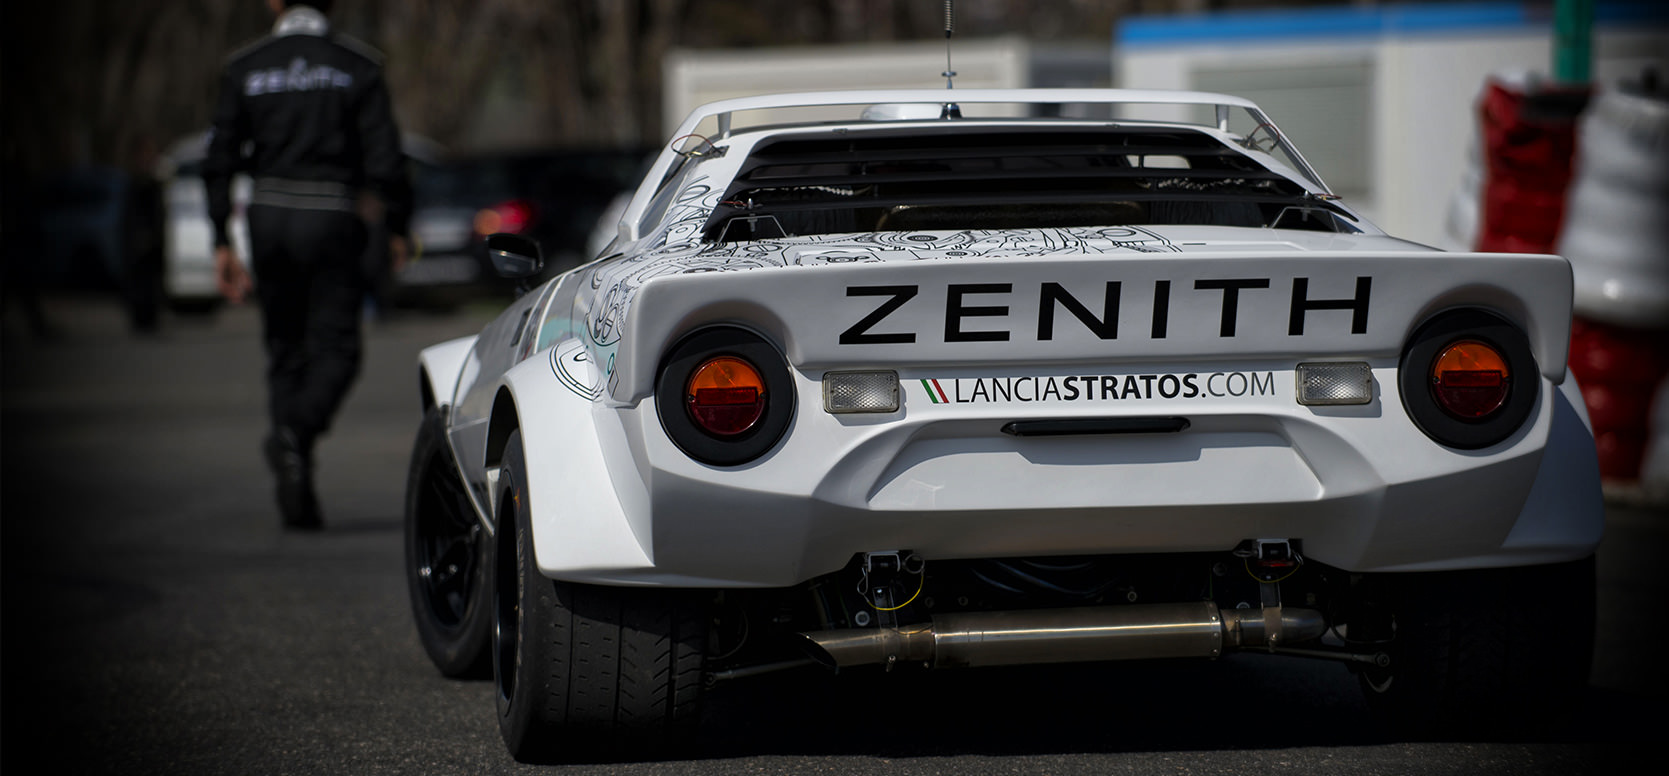 Lancia Stratos Zenith rear